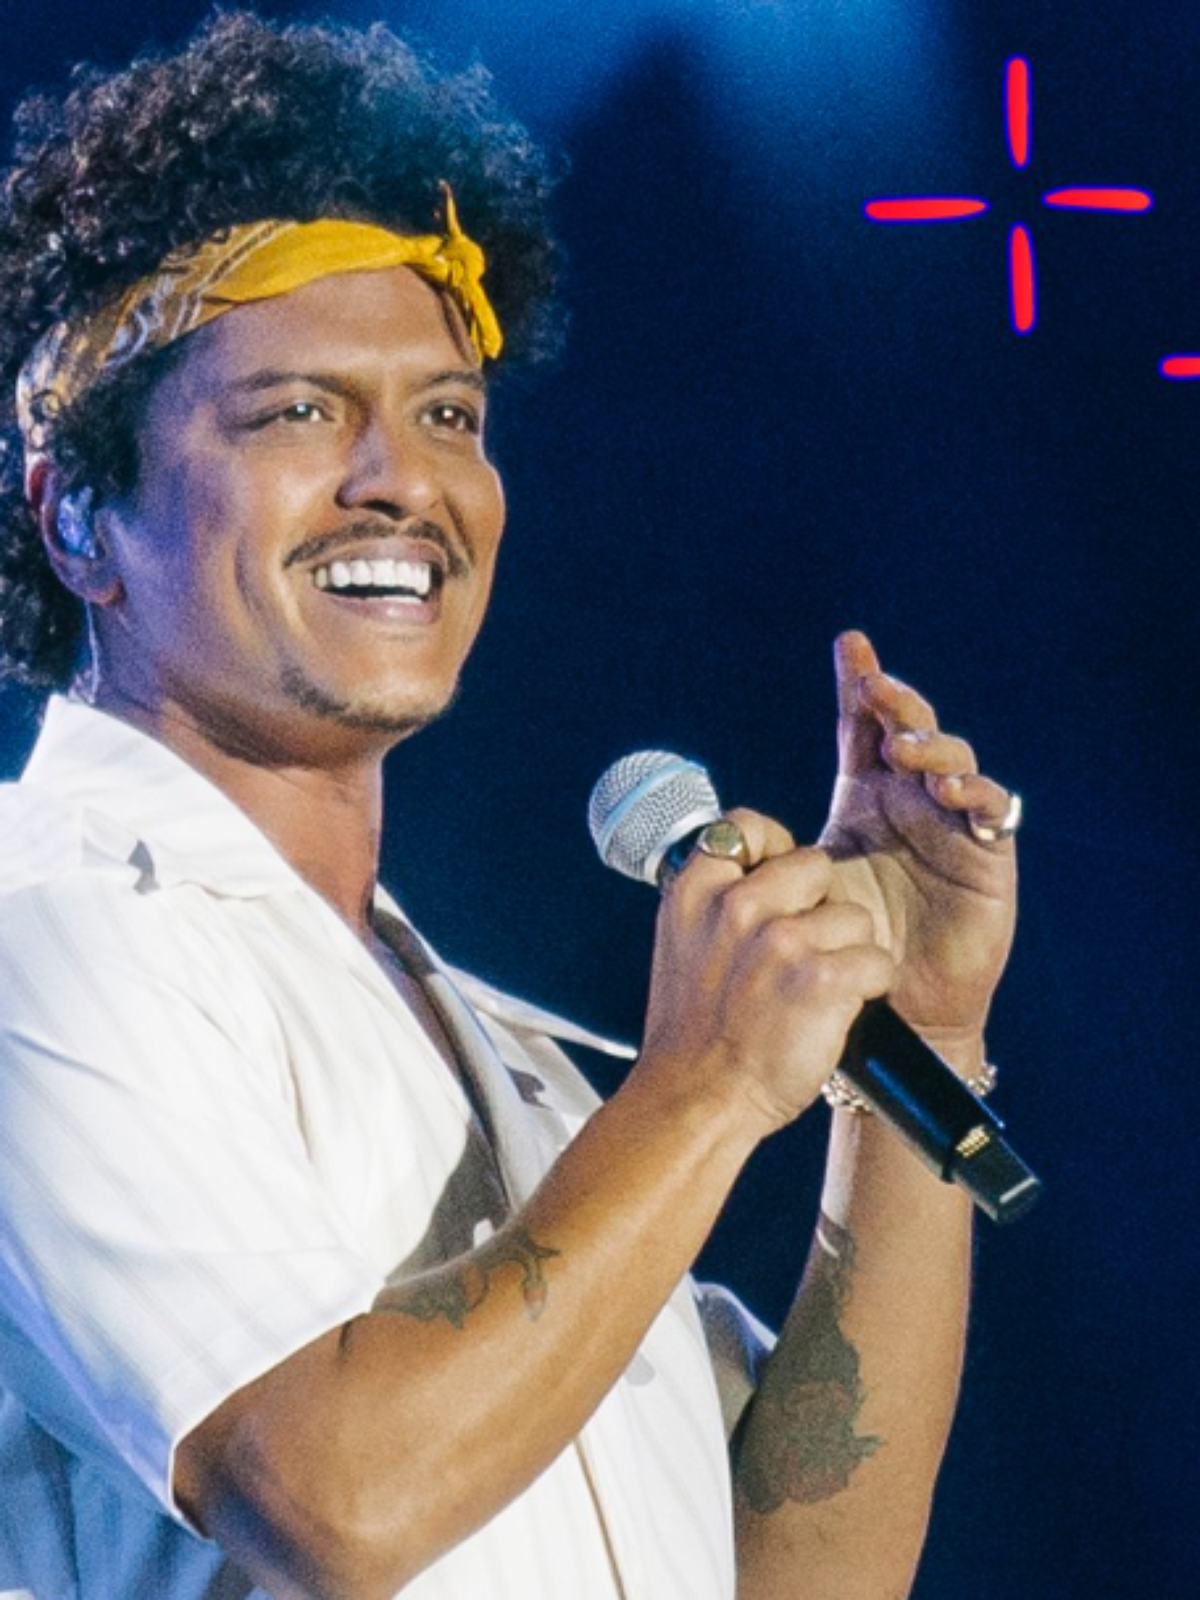 HZ, Bruno Mars faz show com 'Evidências' no The Town e justifica ingresso  disputado